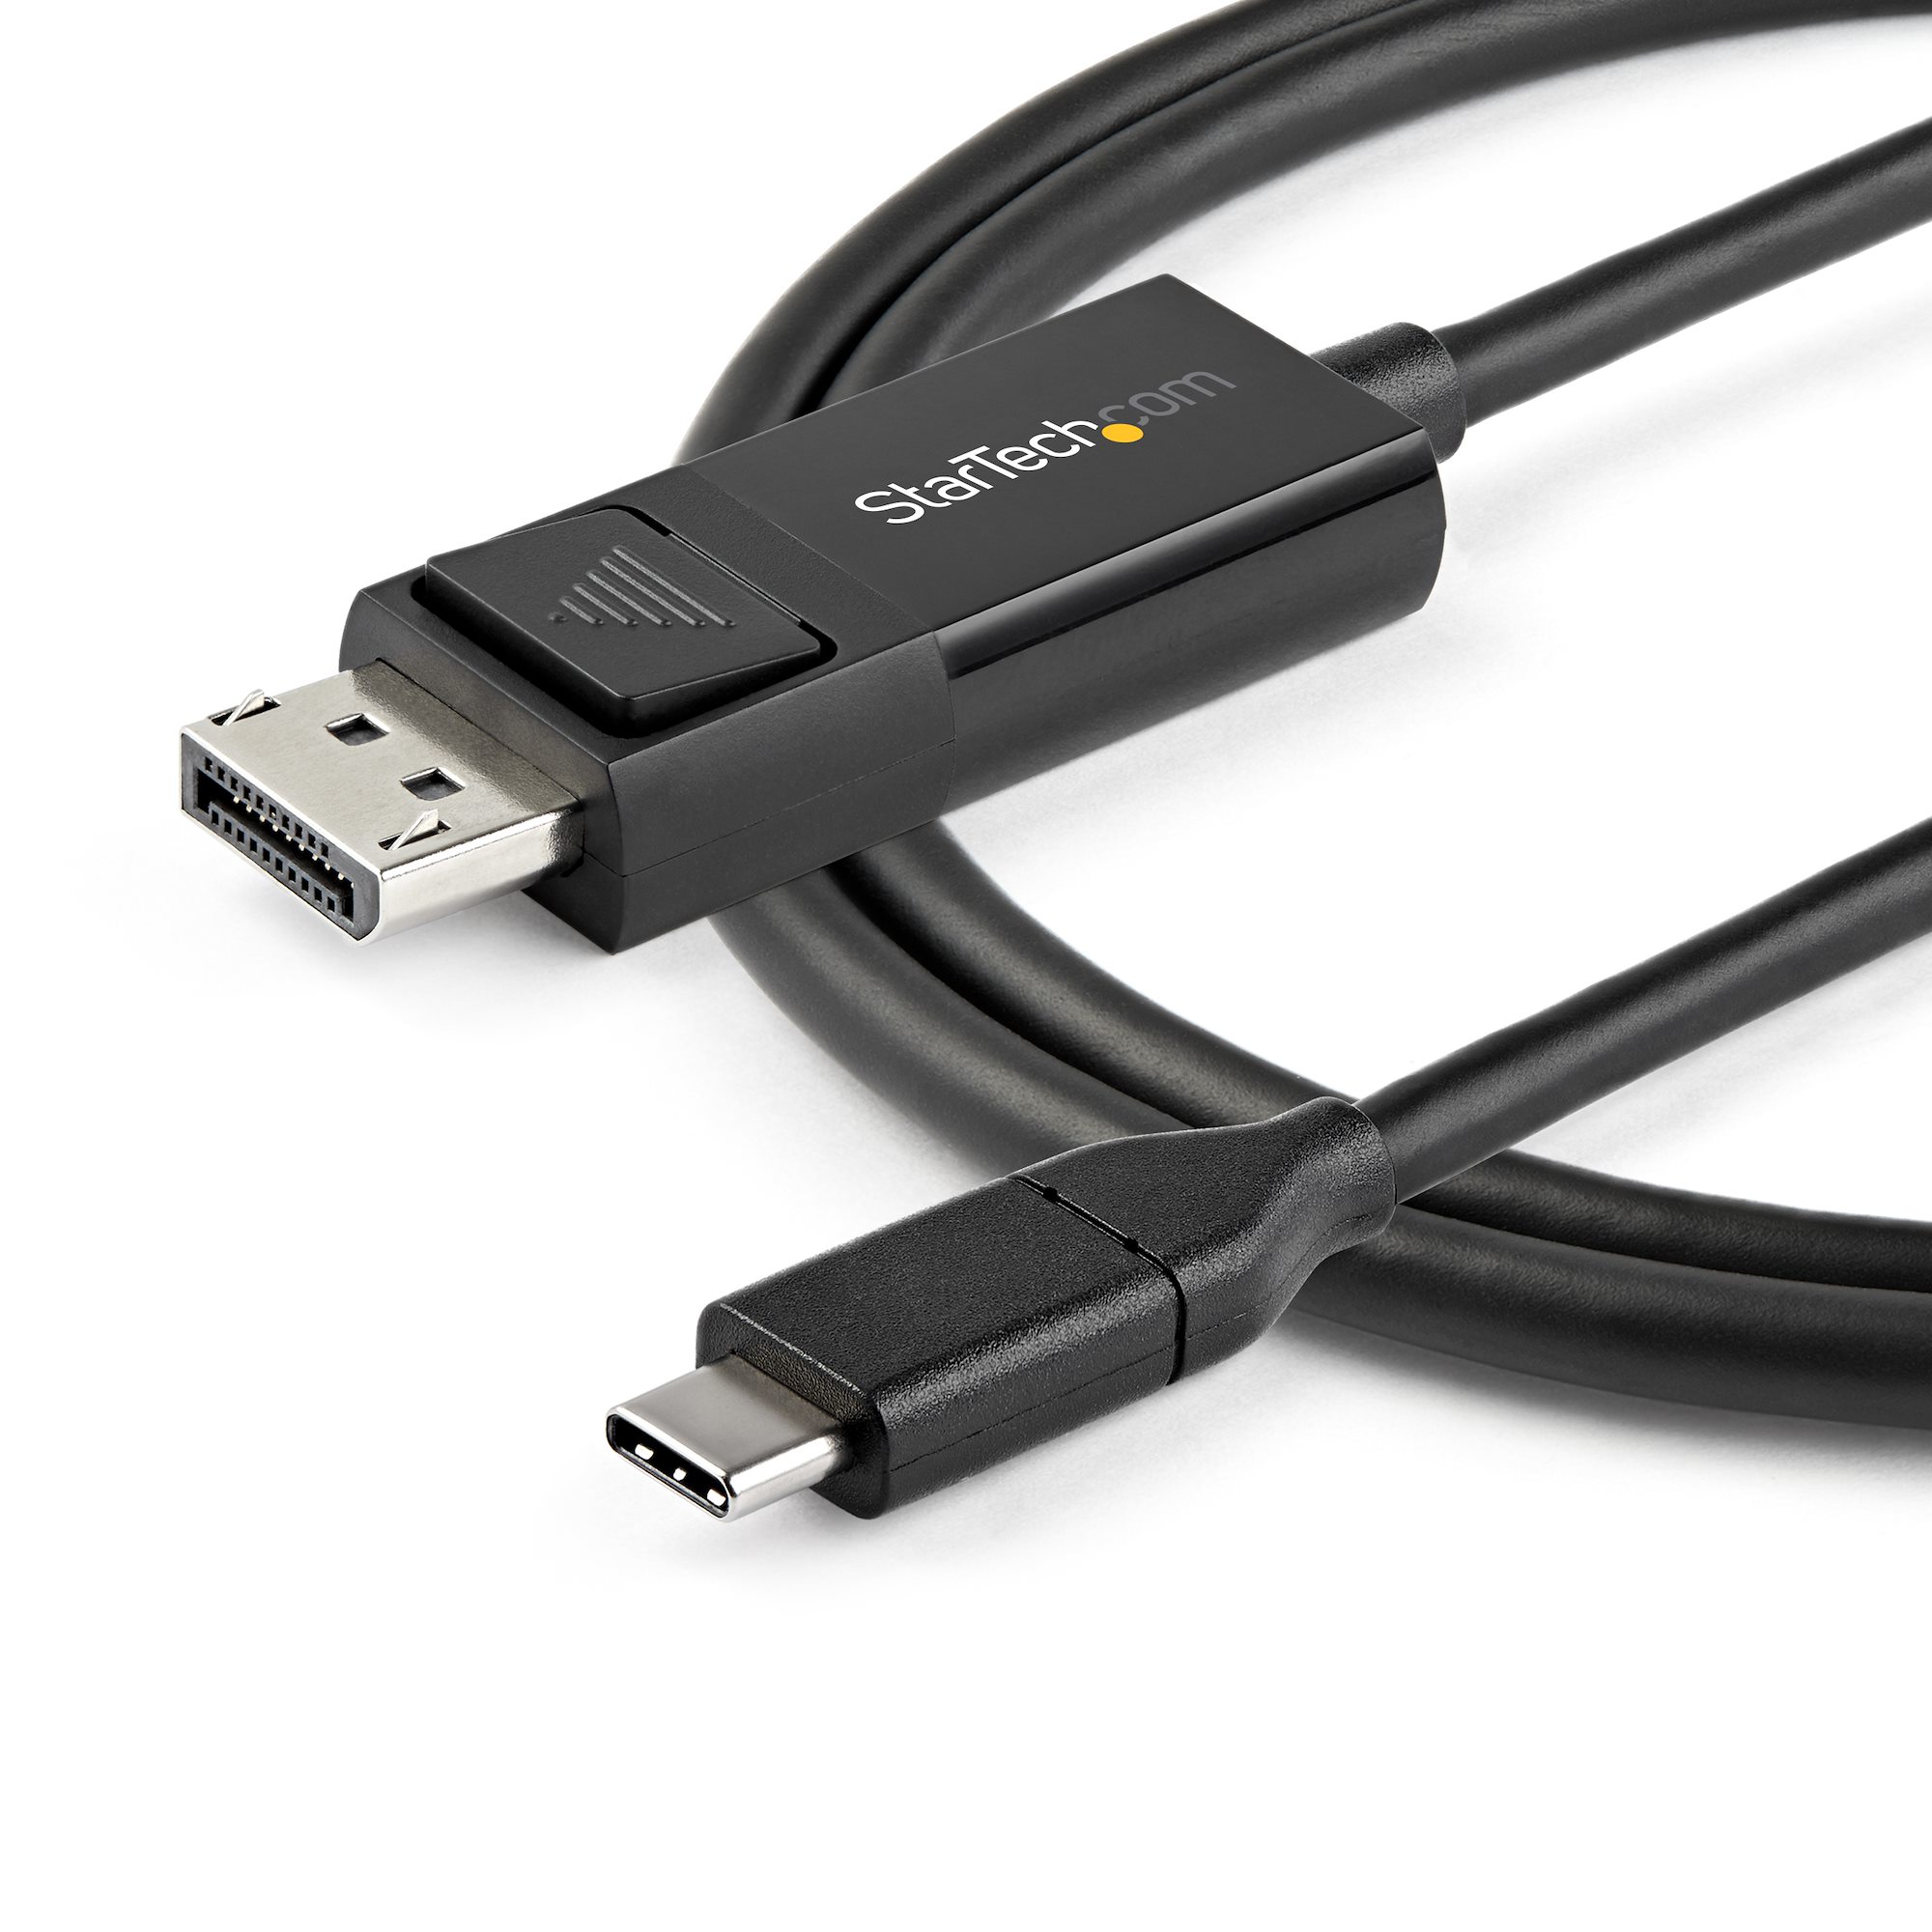 新品未使用品✨ディスプレイアダプタ USB-C 1.4 変換ケーブル 2m